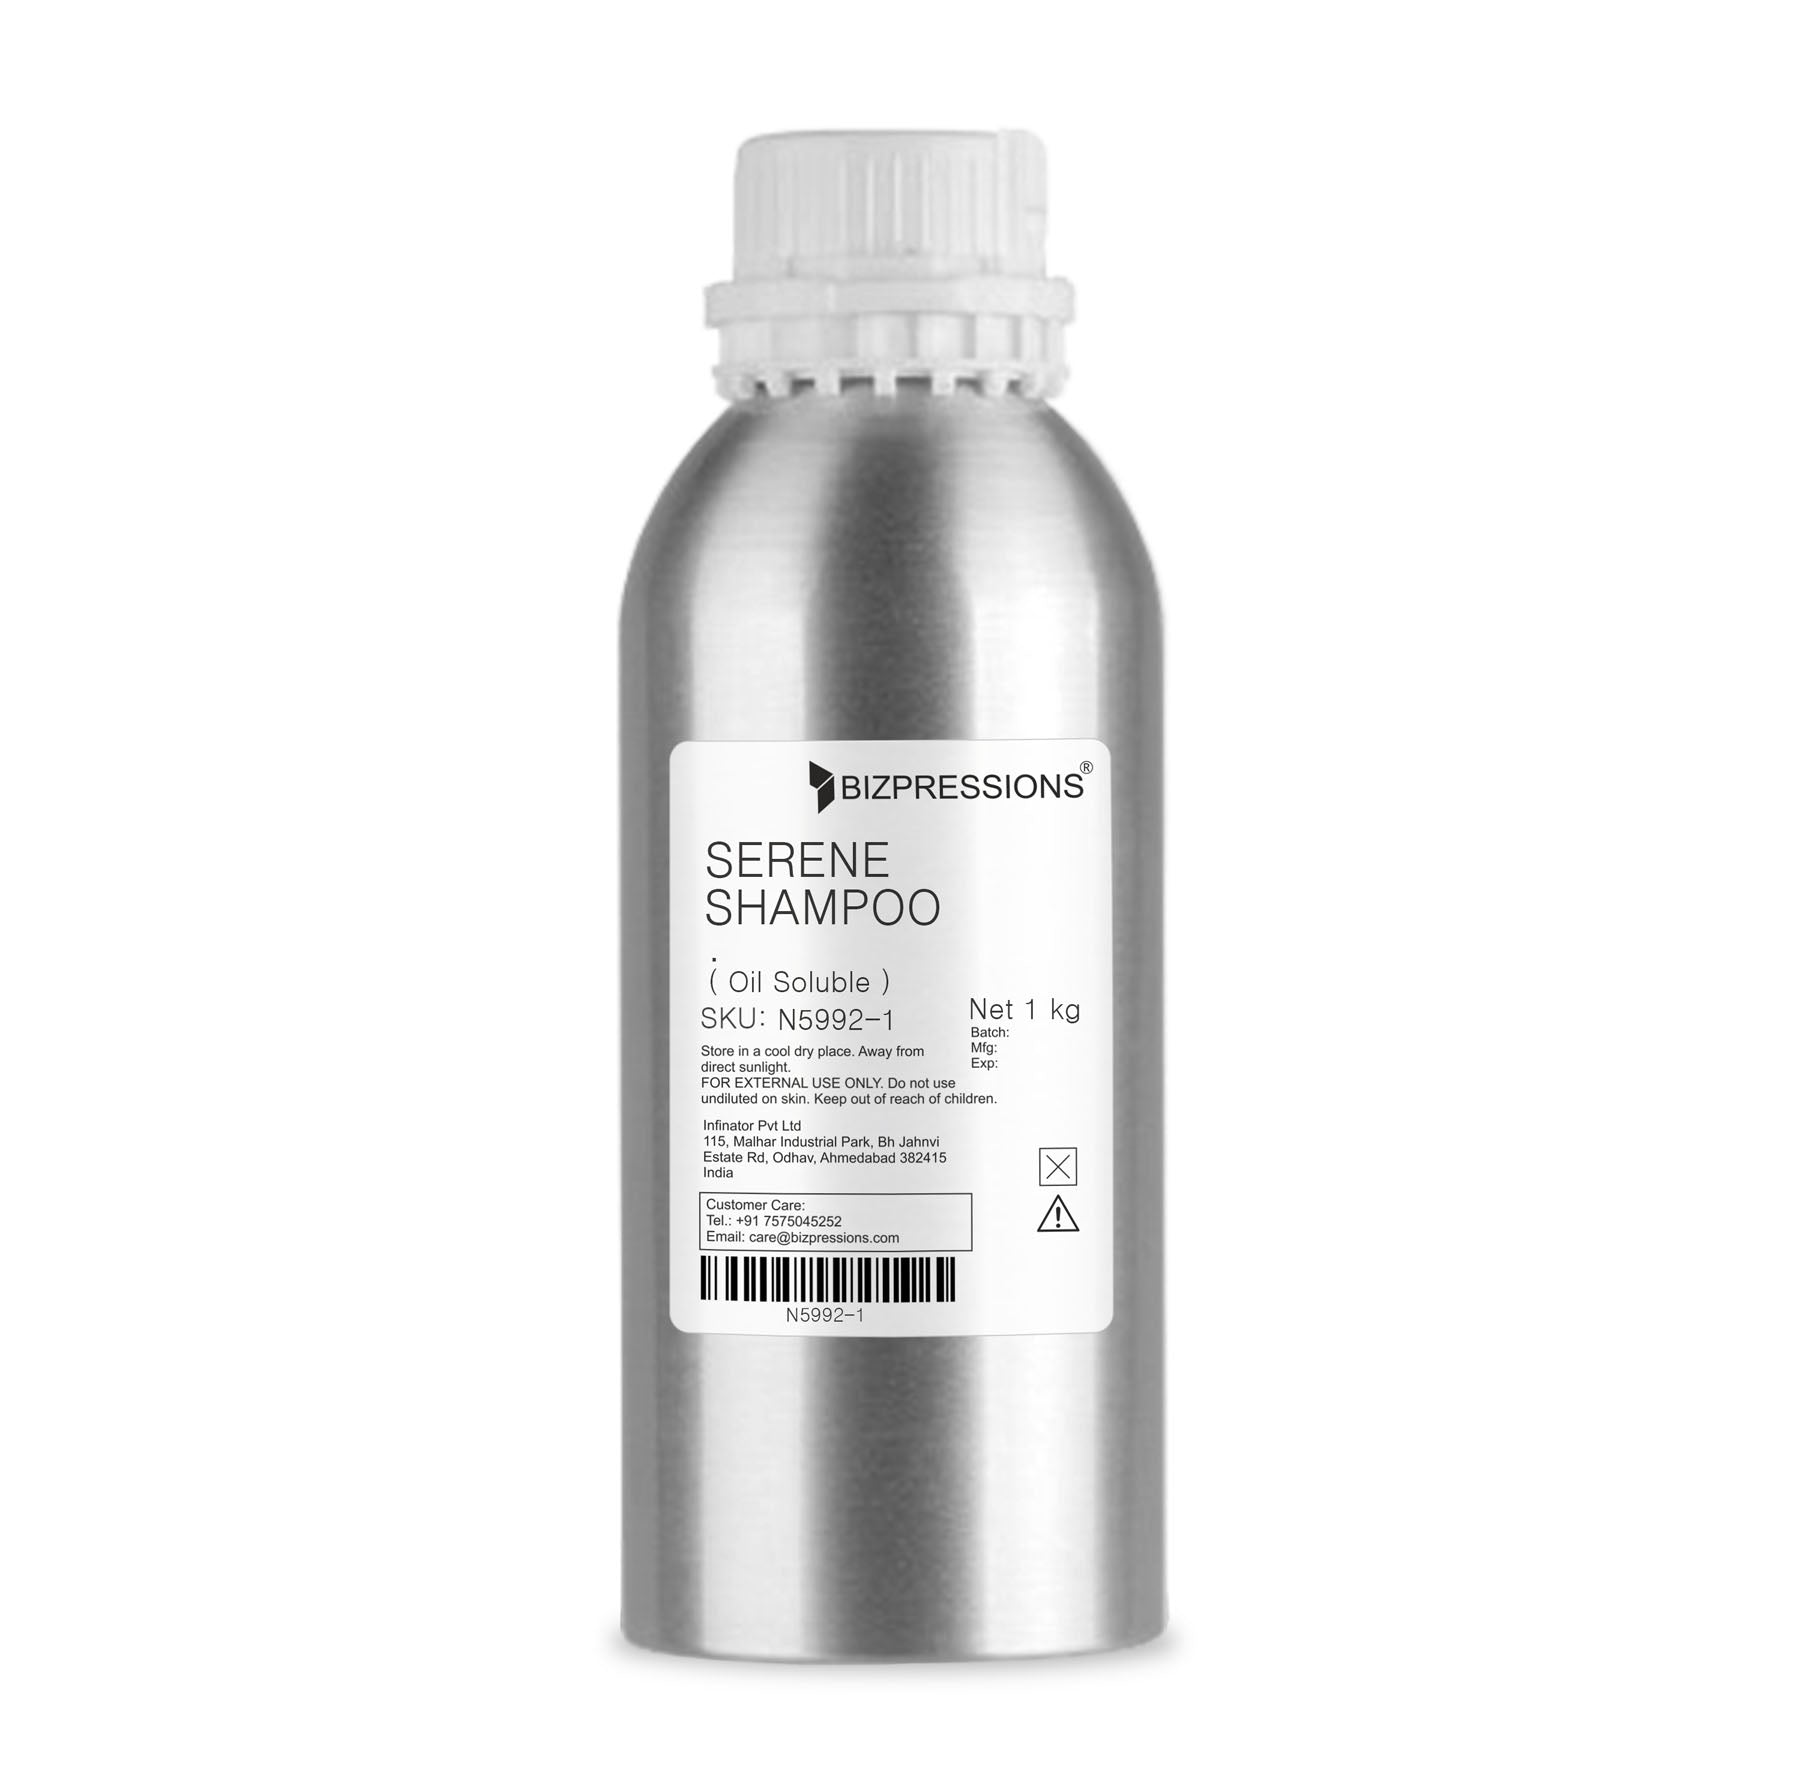 SERENE SHAMPOO - Fragrance ( Oil Soluble ) - 1 kg